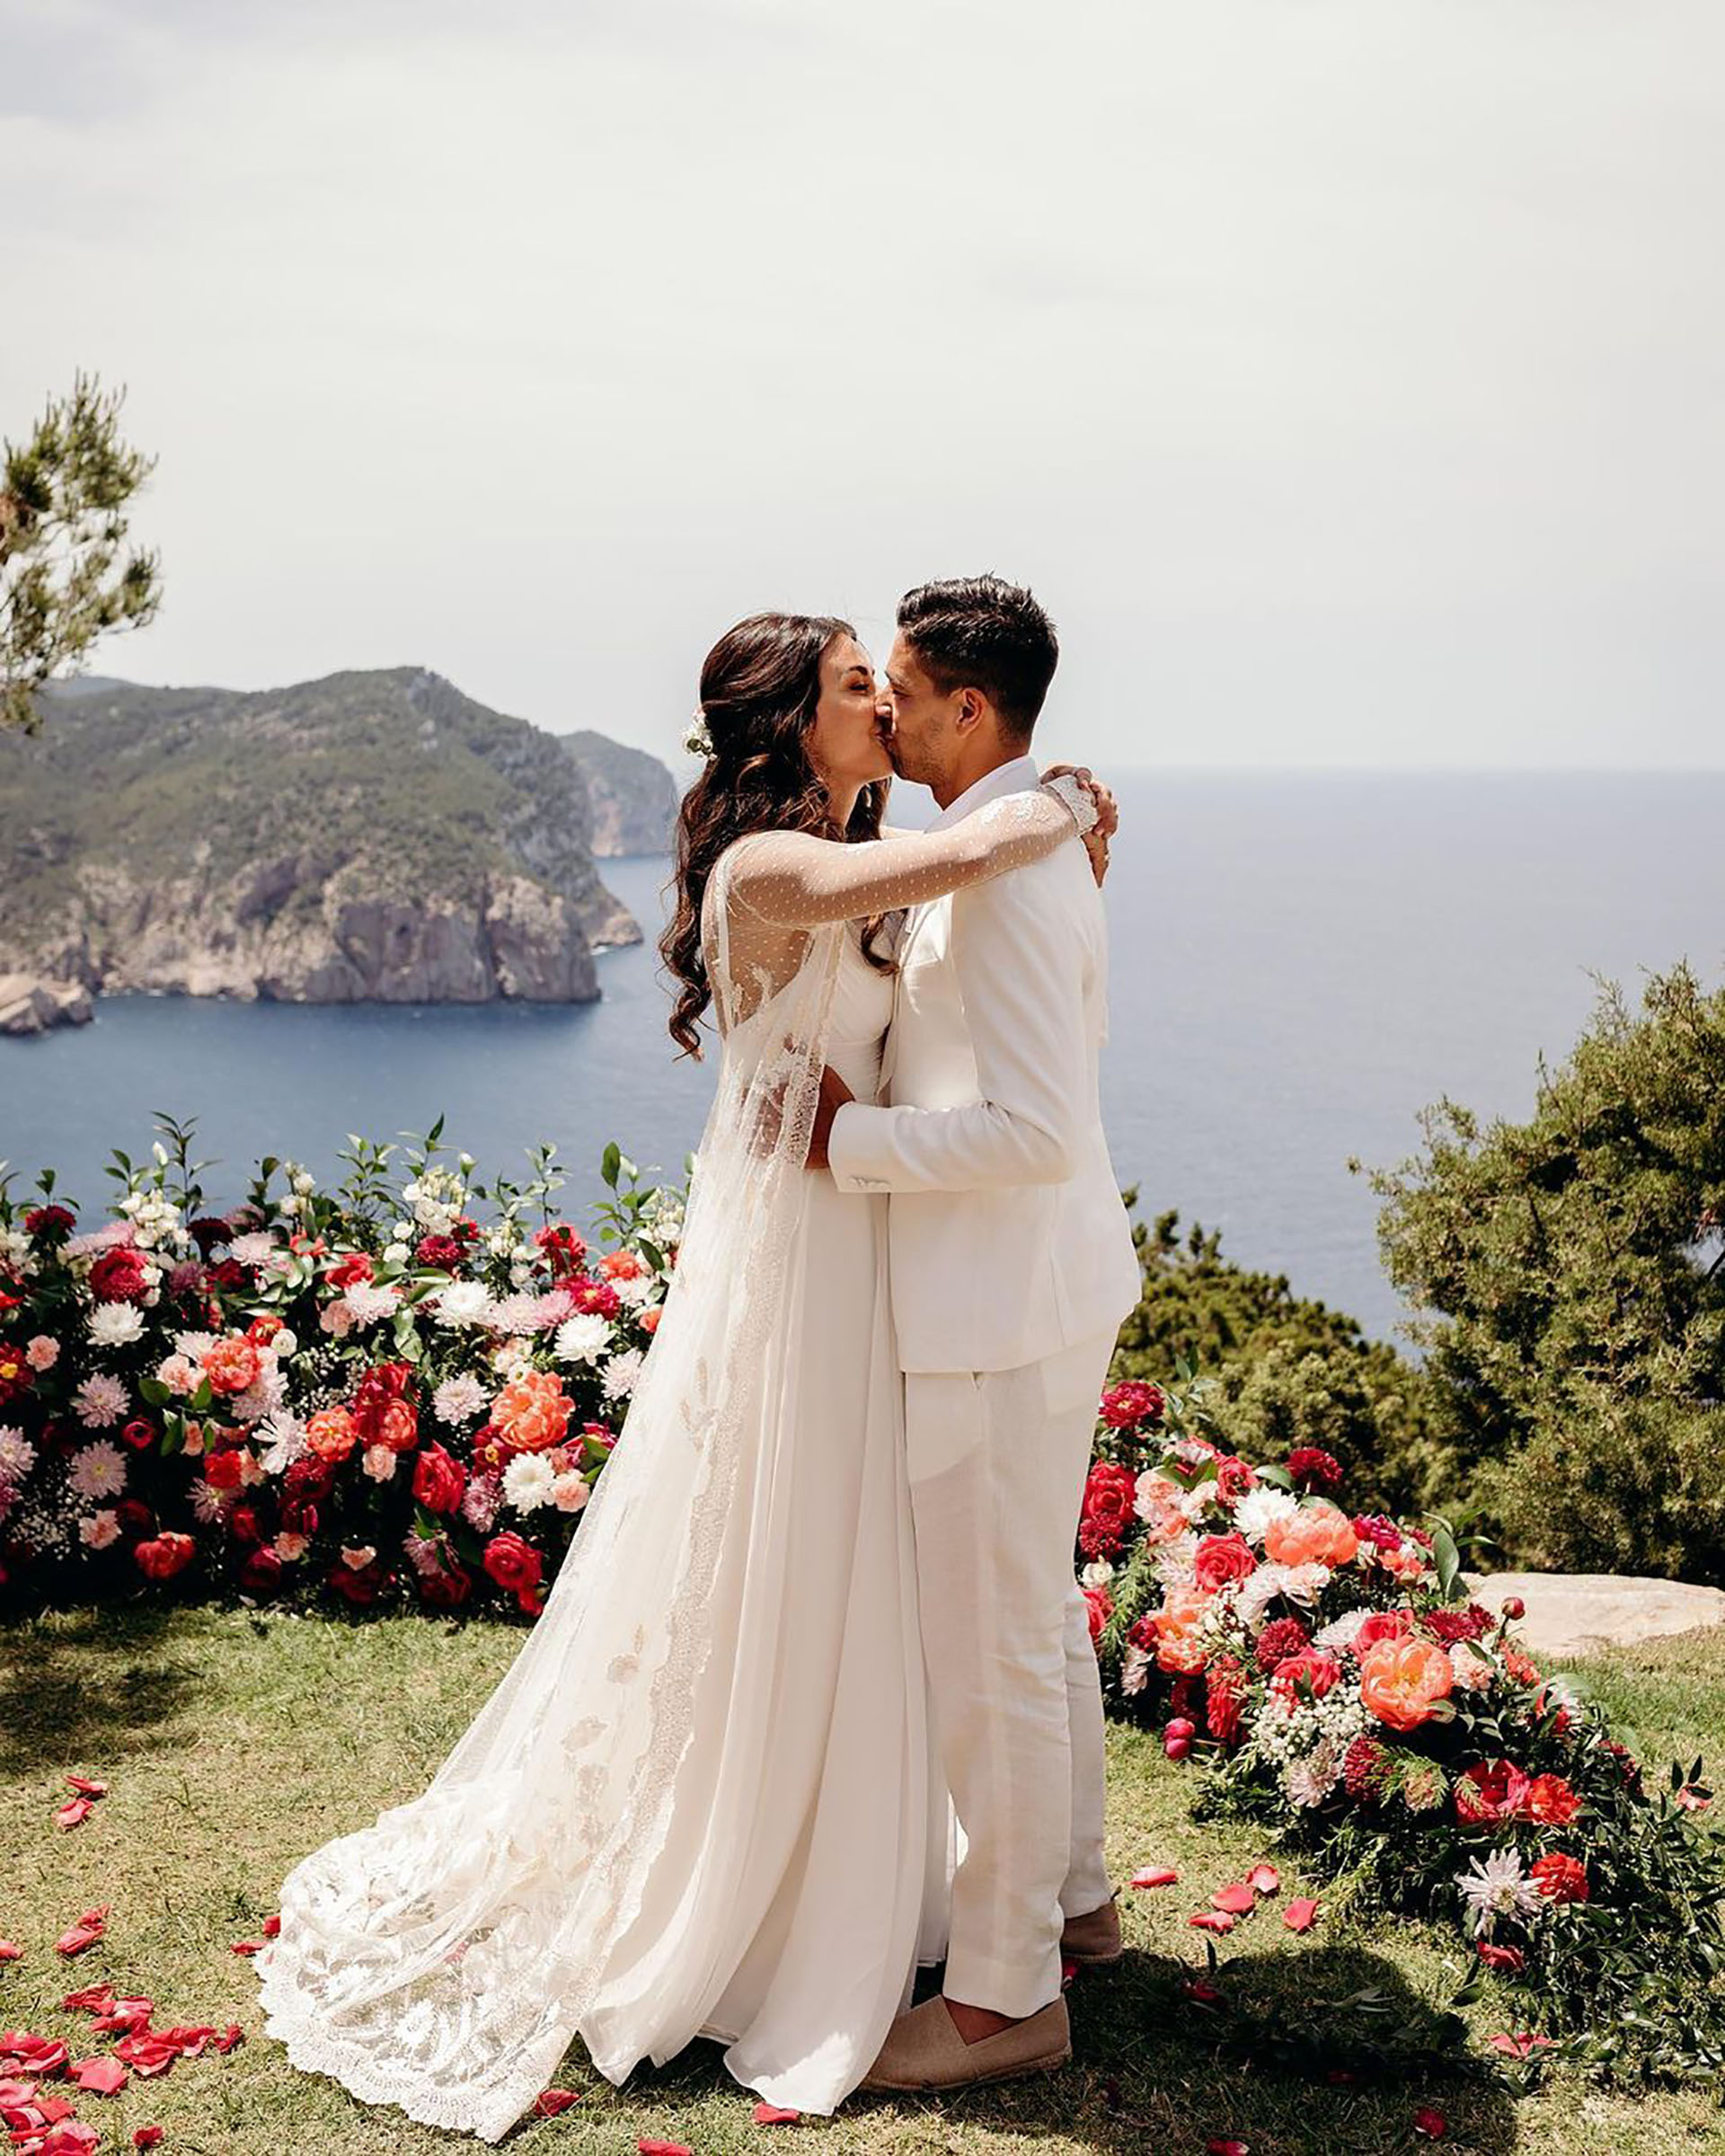 La primera boda íntima de la pareja fue en Ibiza, España